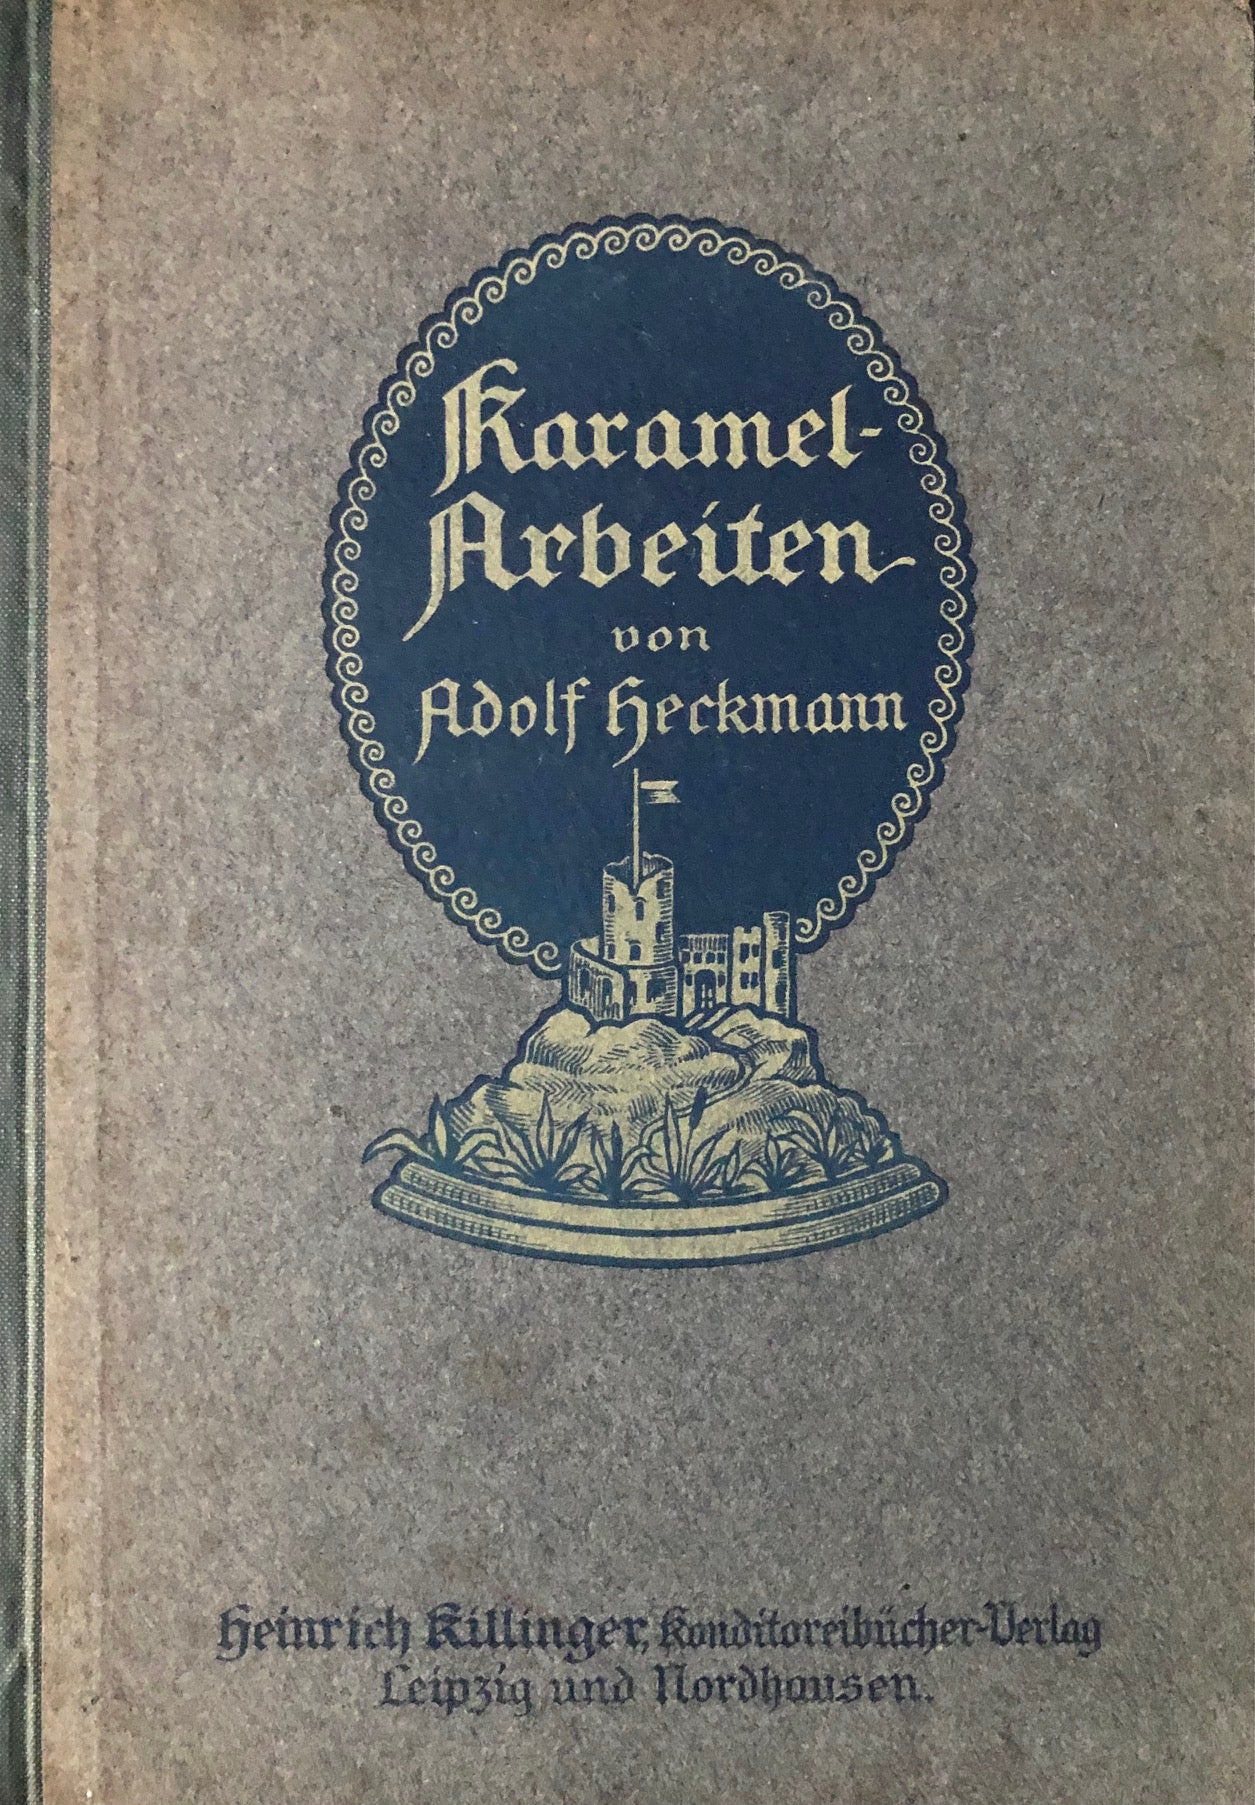 (Confectionery) Adolf Heckmann. Karamel-Arbeiten